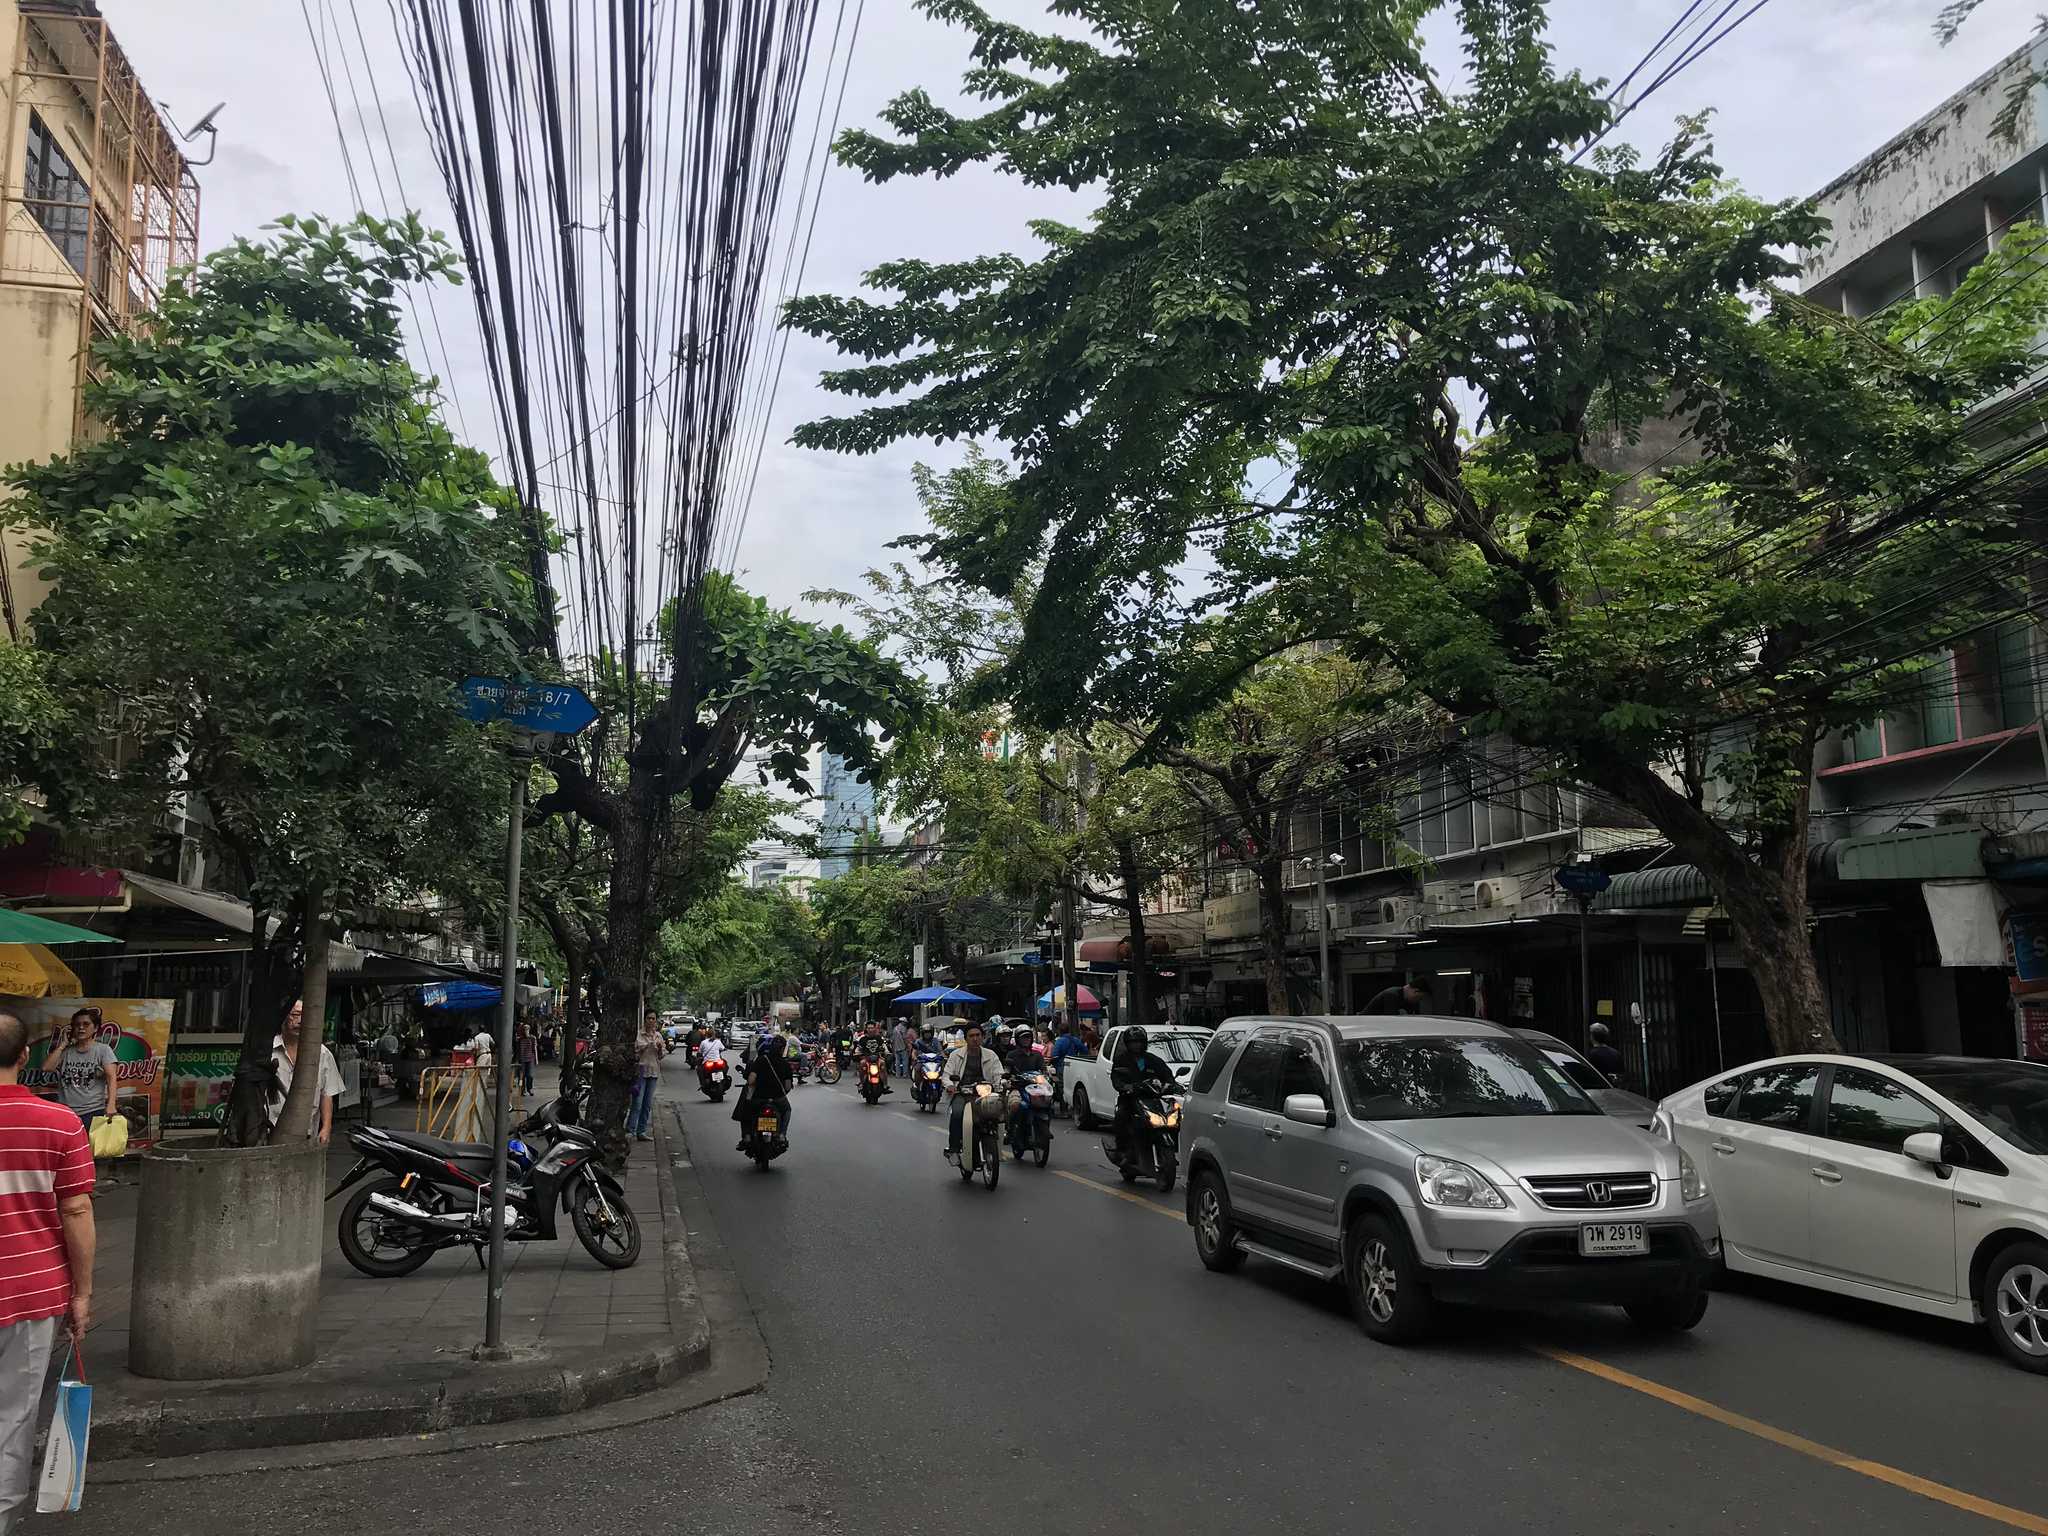 Sathon District of Bangkok